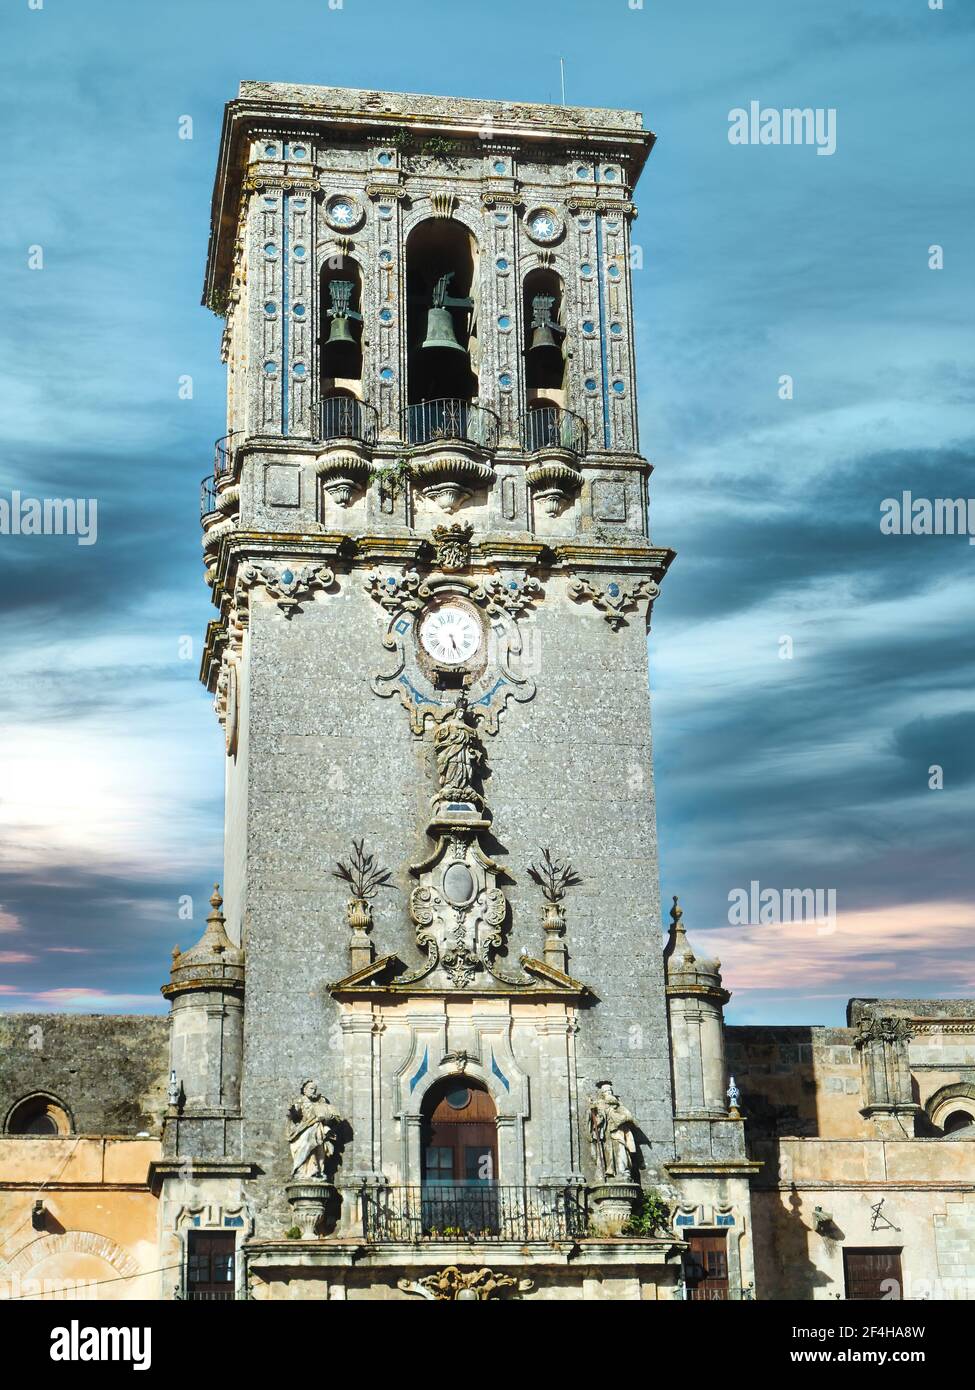 Bell tower of the Basilica Menor de Santa María de la Asunción, in Arcos de la Frontera, a beautiful town in the province of Cadiz, Andalusia, Spain Stock Photo